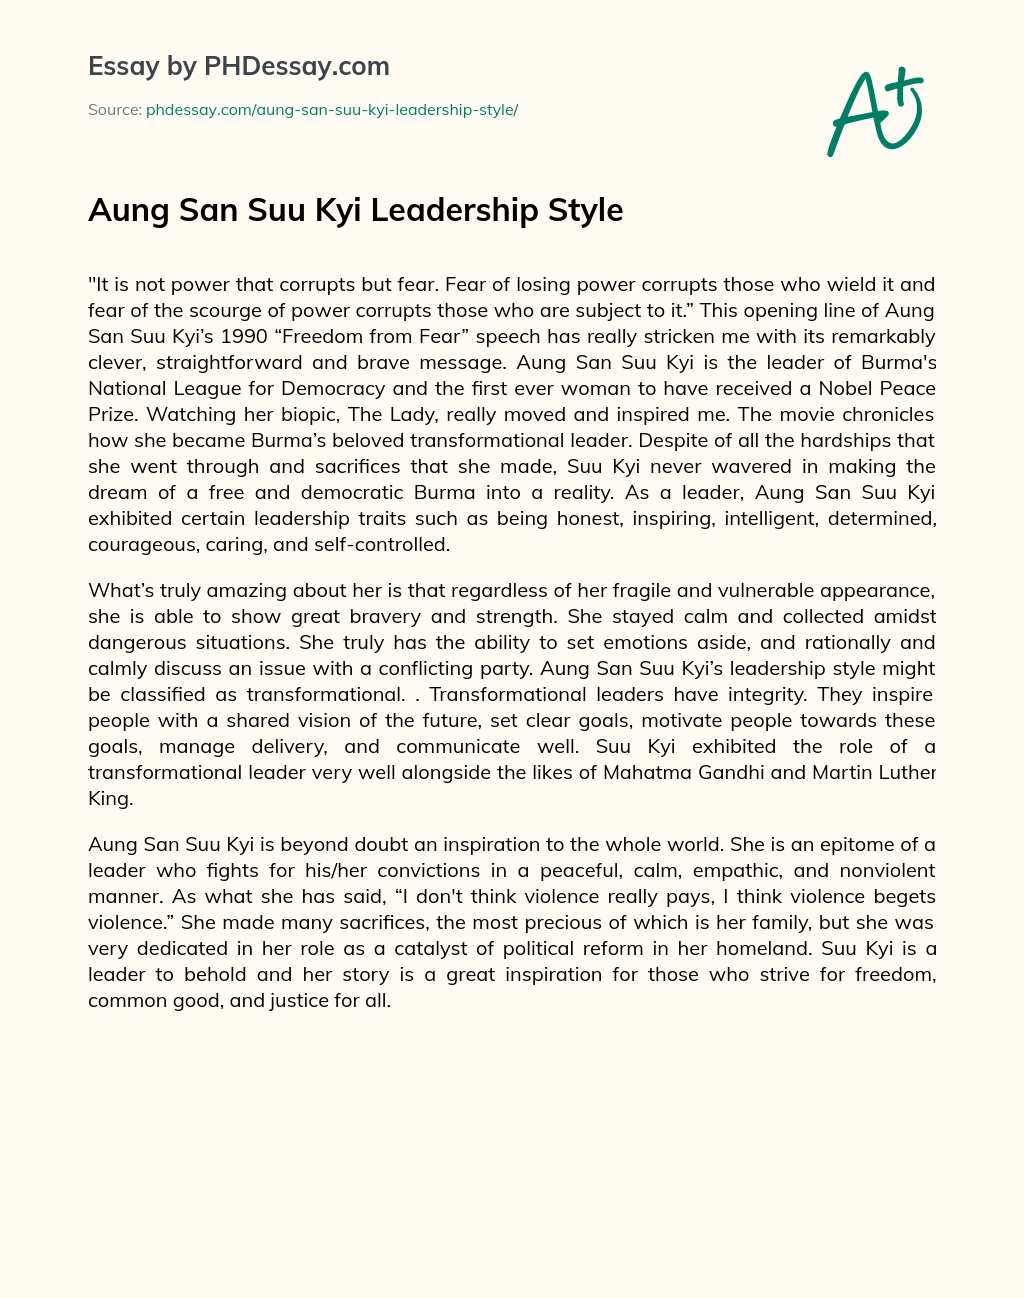 Aung San Suu Kyi Leadership Style essay